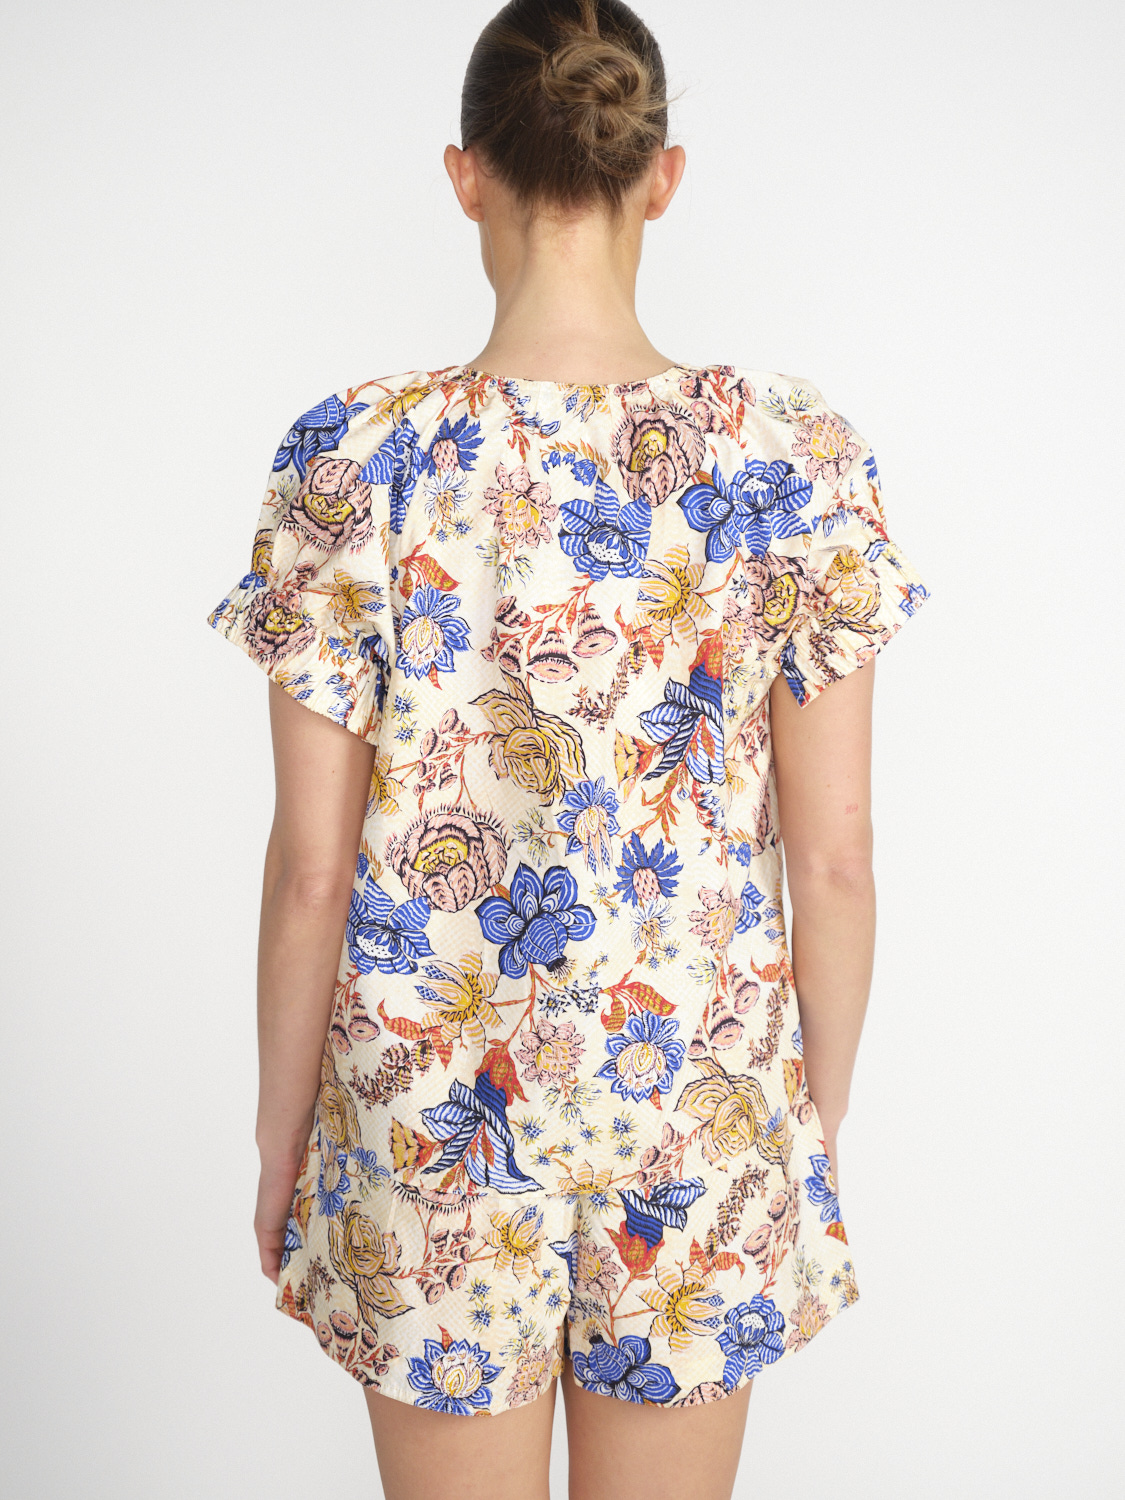 Ulla Johnson Naomi – Baumwoll-Bluse mit Blumen-Design   mehrfarbig 36